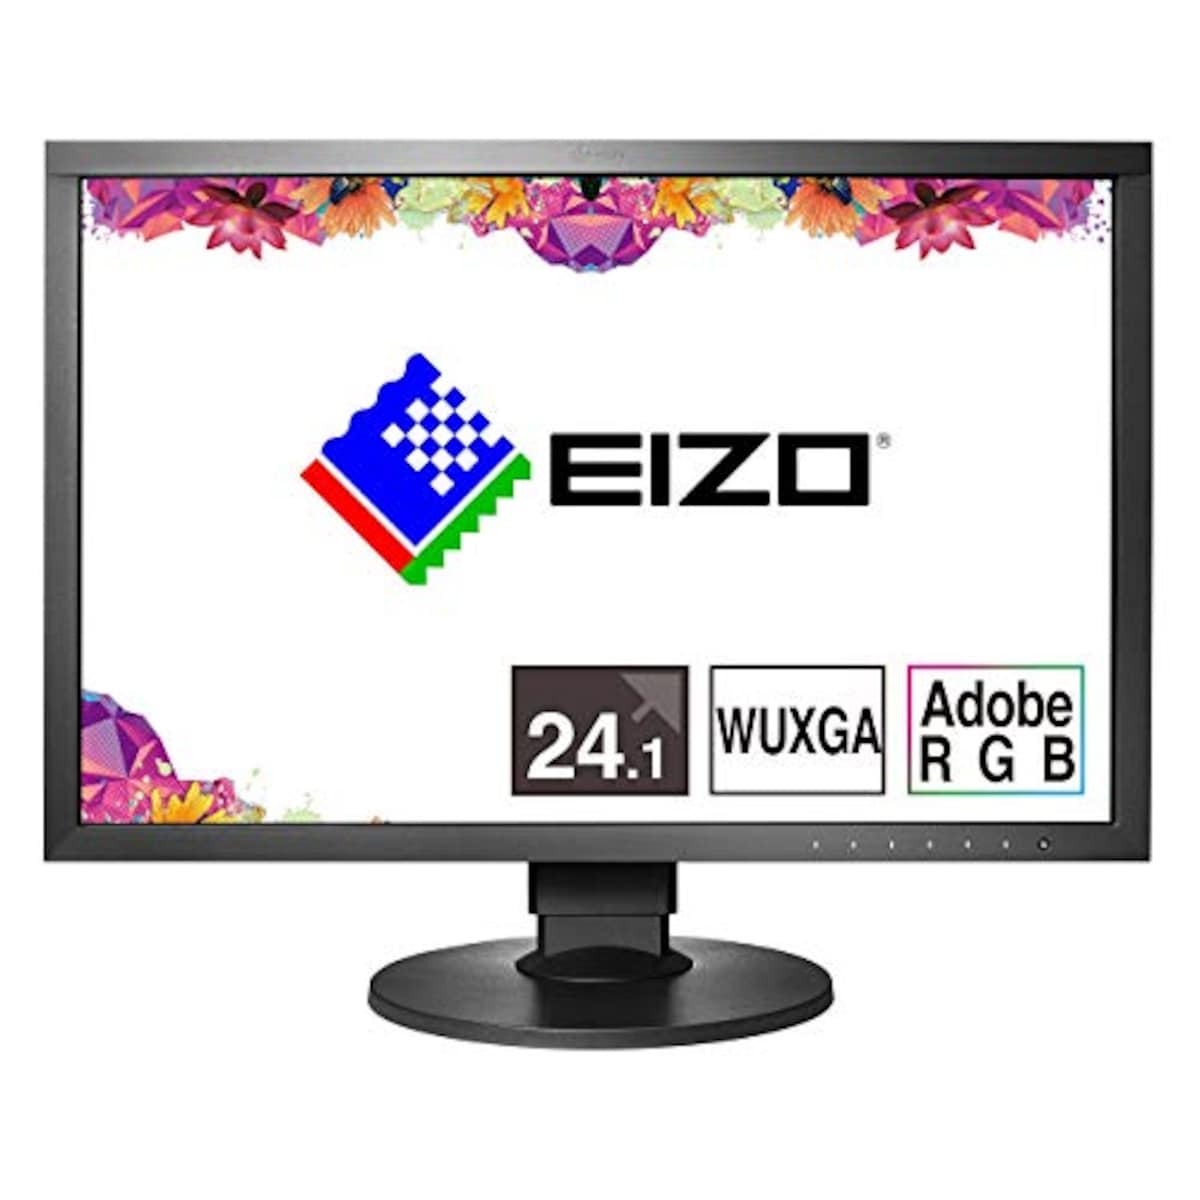 EIZO ColorEdge CS2420-Z (24.1型カラーマネージメント液晶モニター/UXGA Wide/Adobe RGB 99%/)